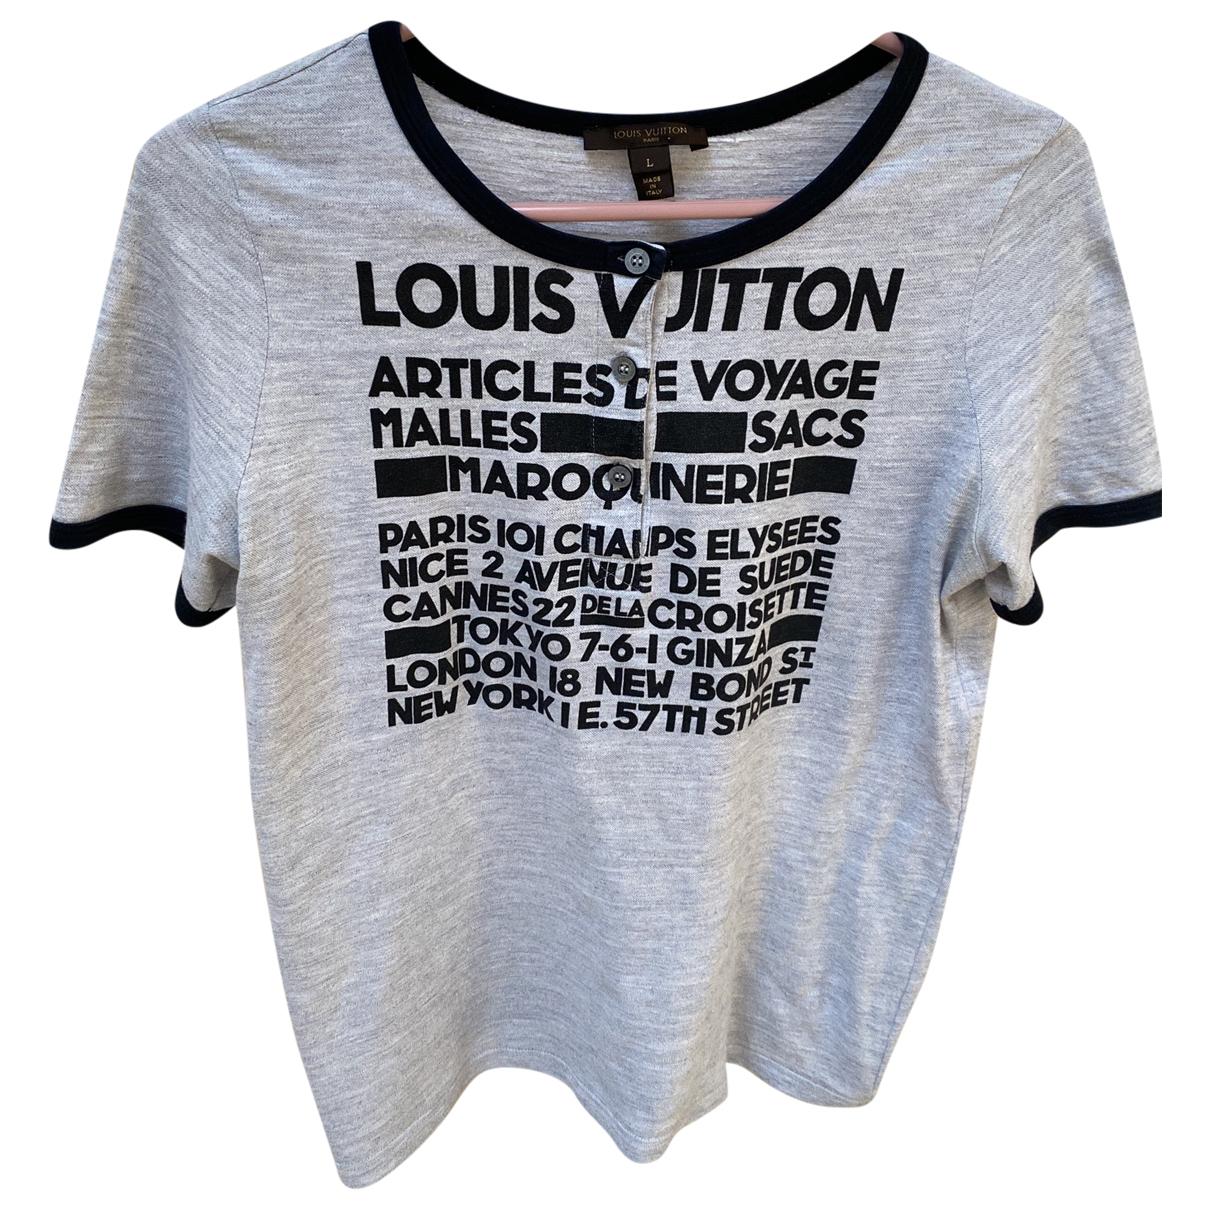 22 Best Louis vuitton t shirt ideas